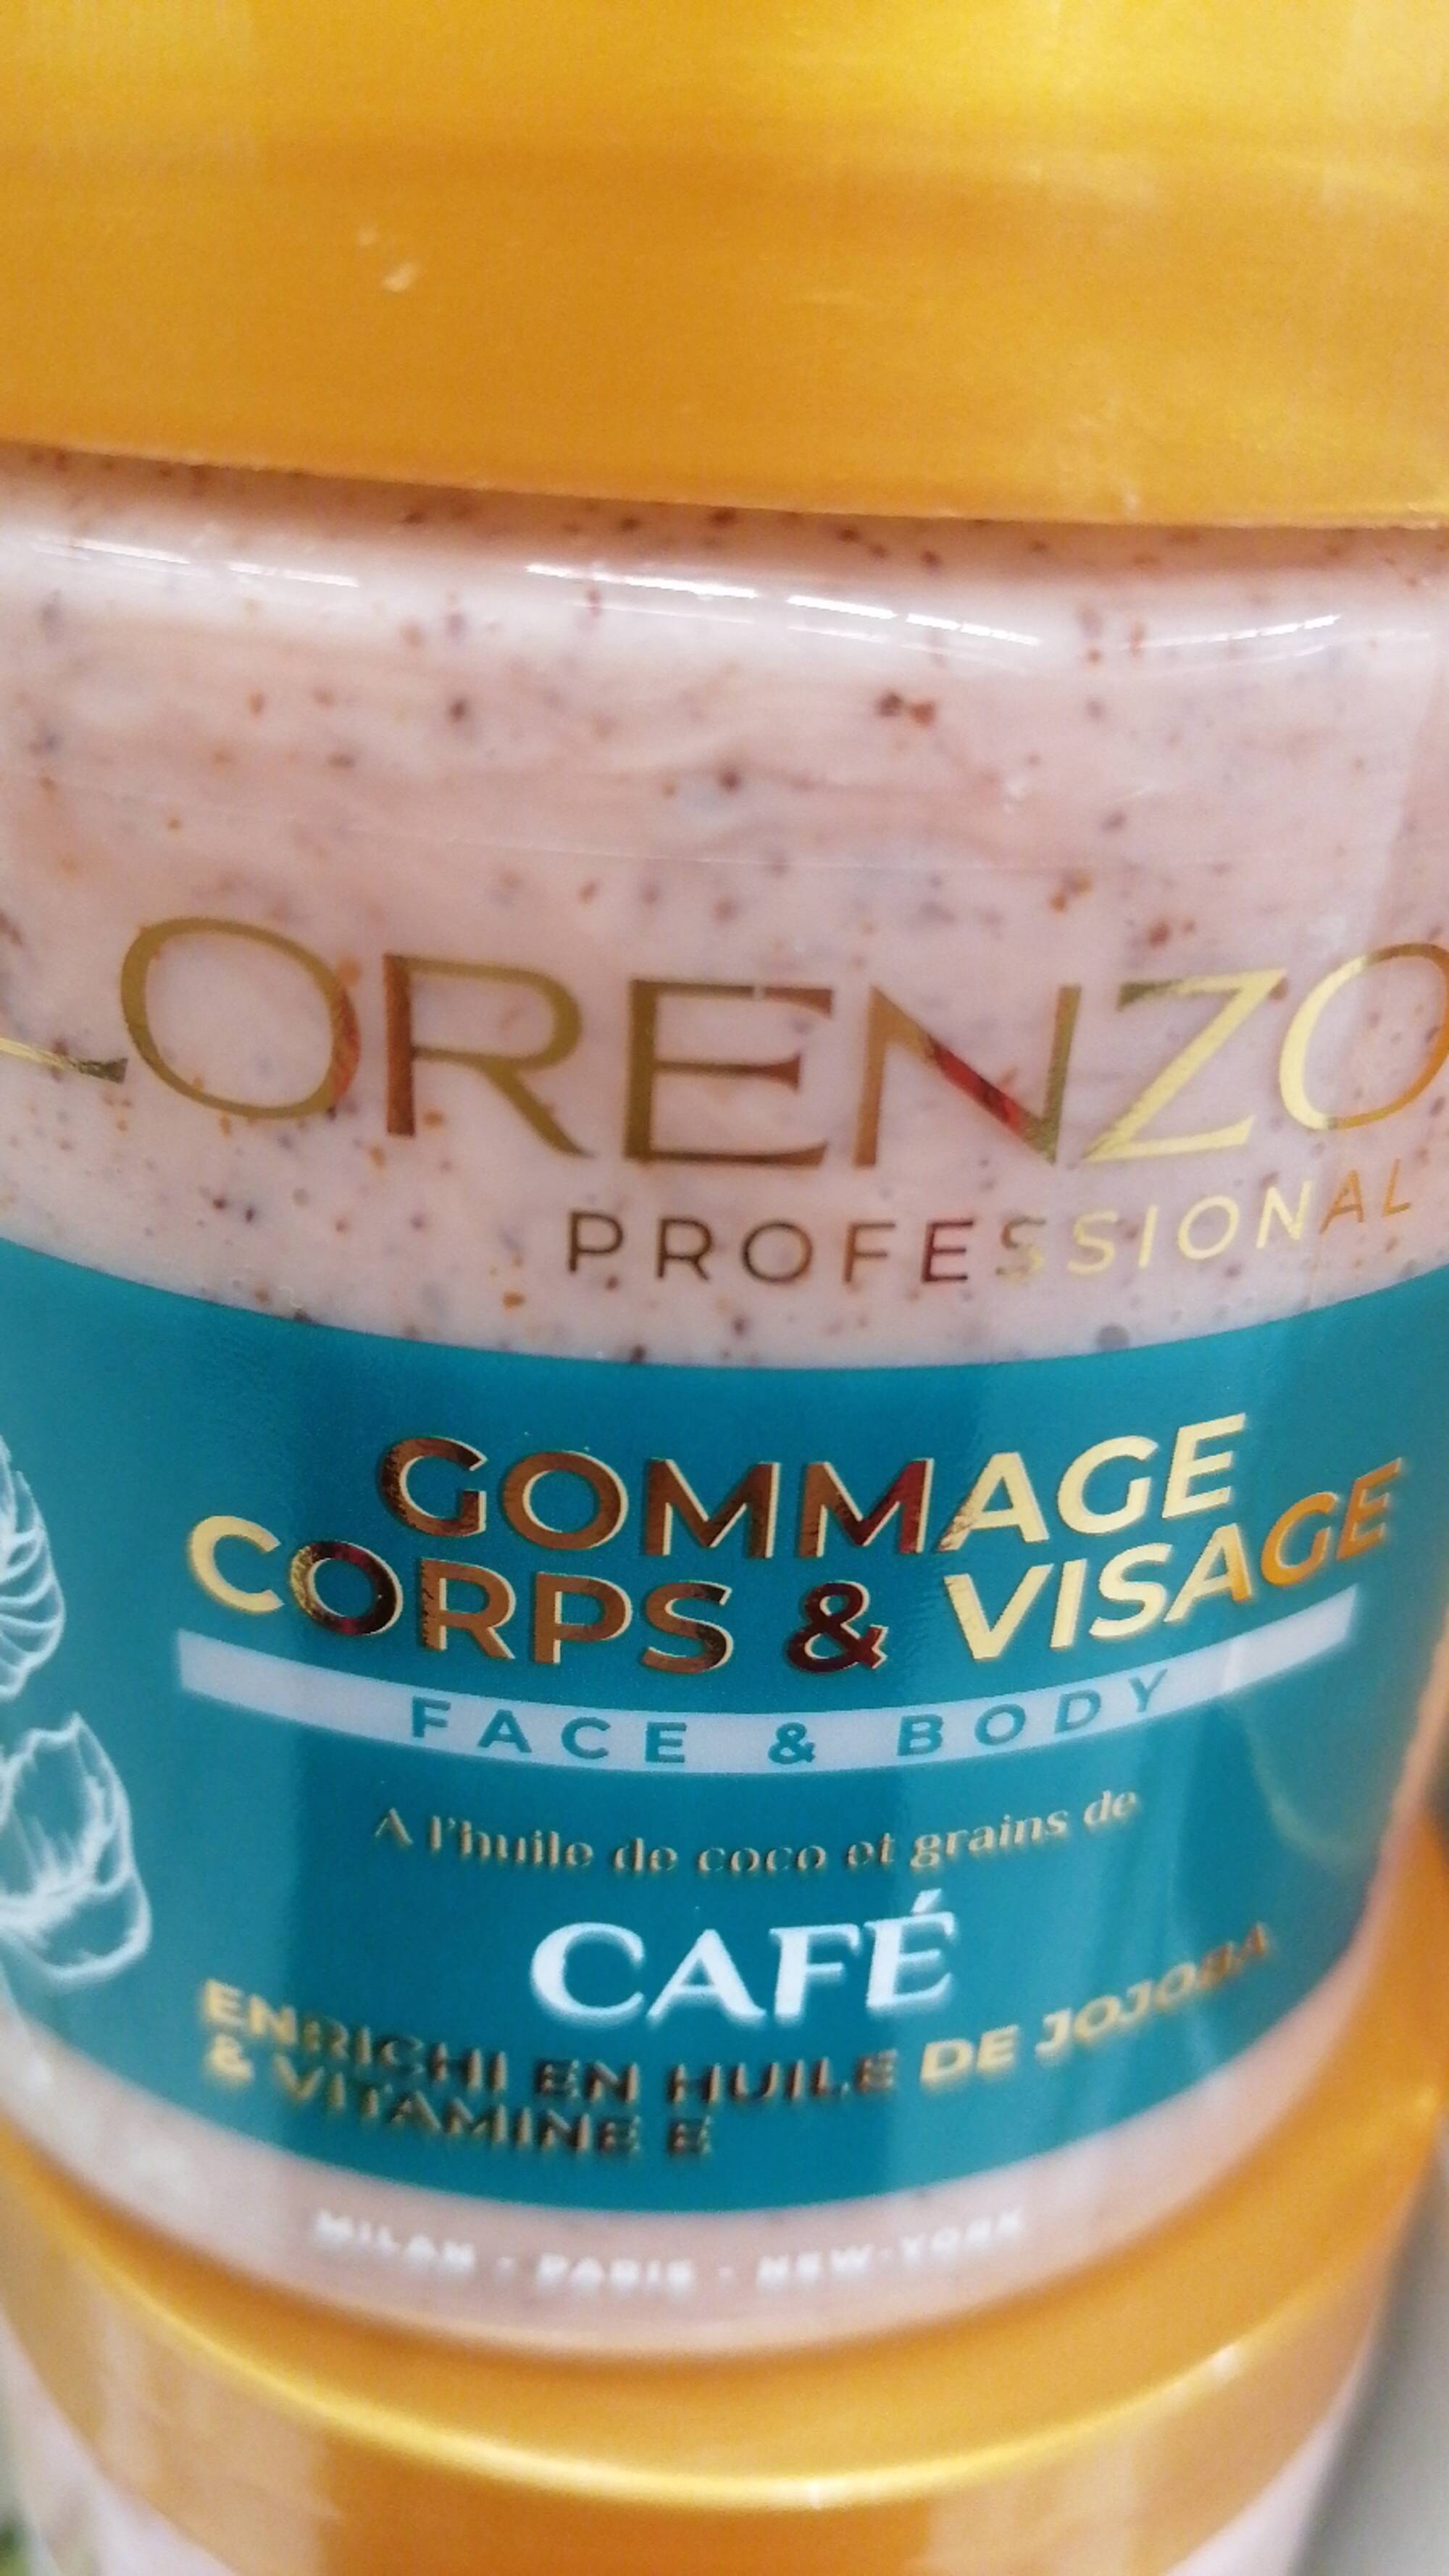 LORENZO - Café - Gommage corps et visage